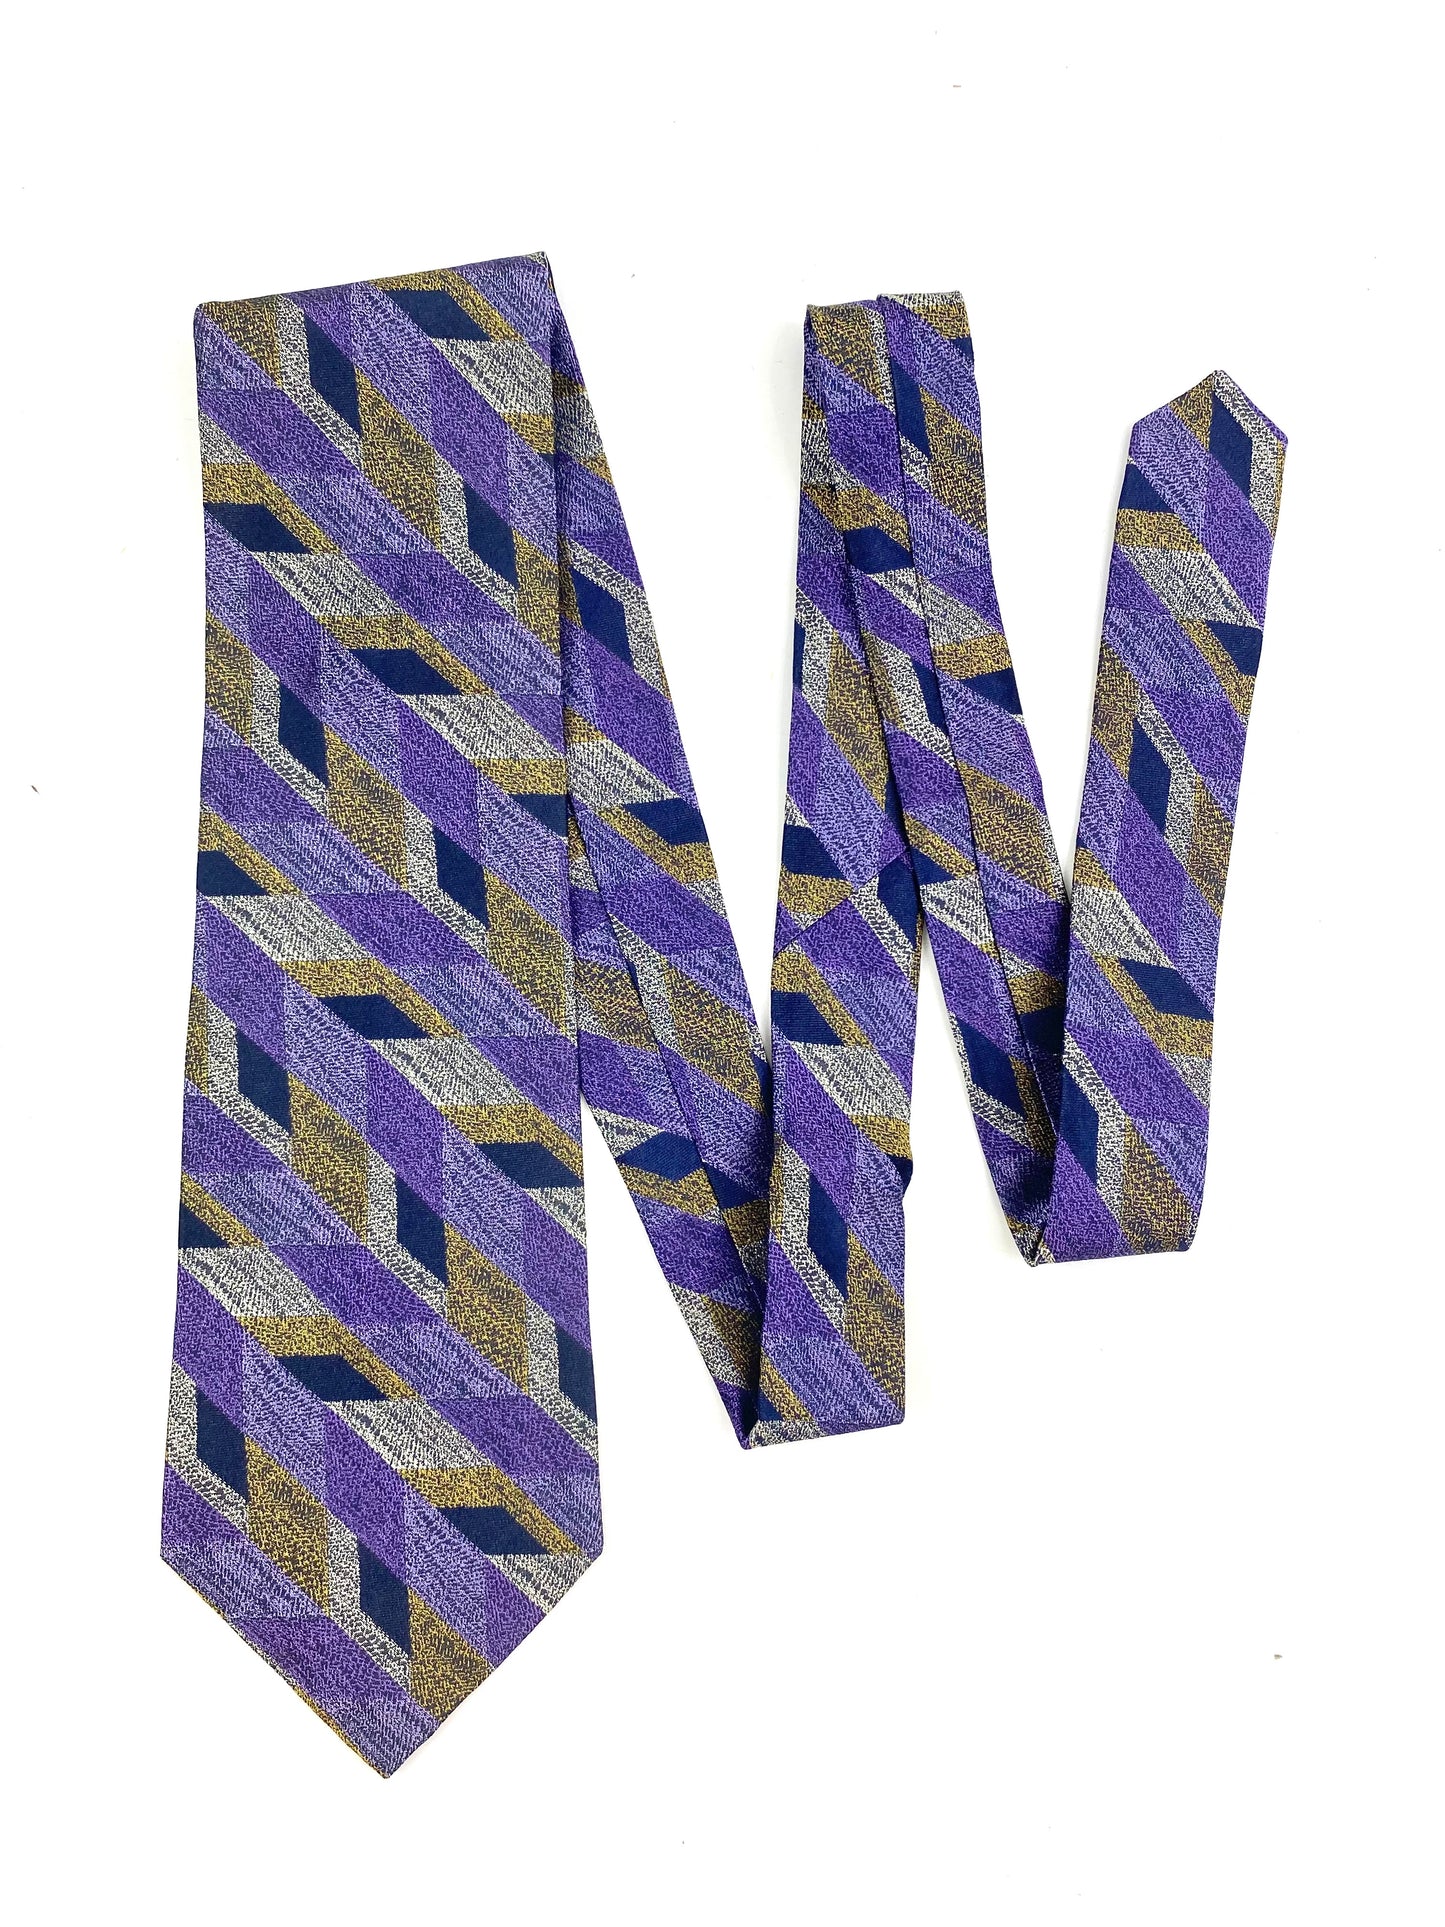 90s Deadstock Silk Necktie, Men's Vintage Purple/ Gold Geometric Stripe Pattern Tie, NOS